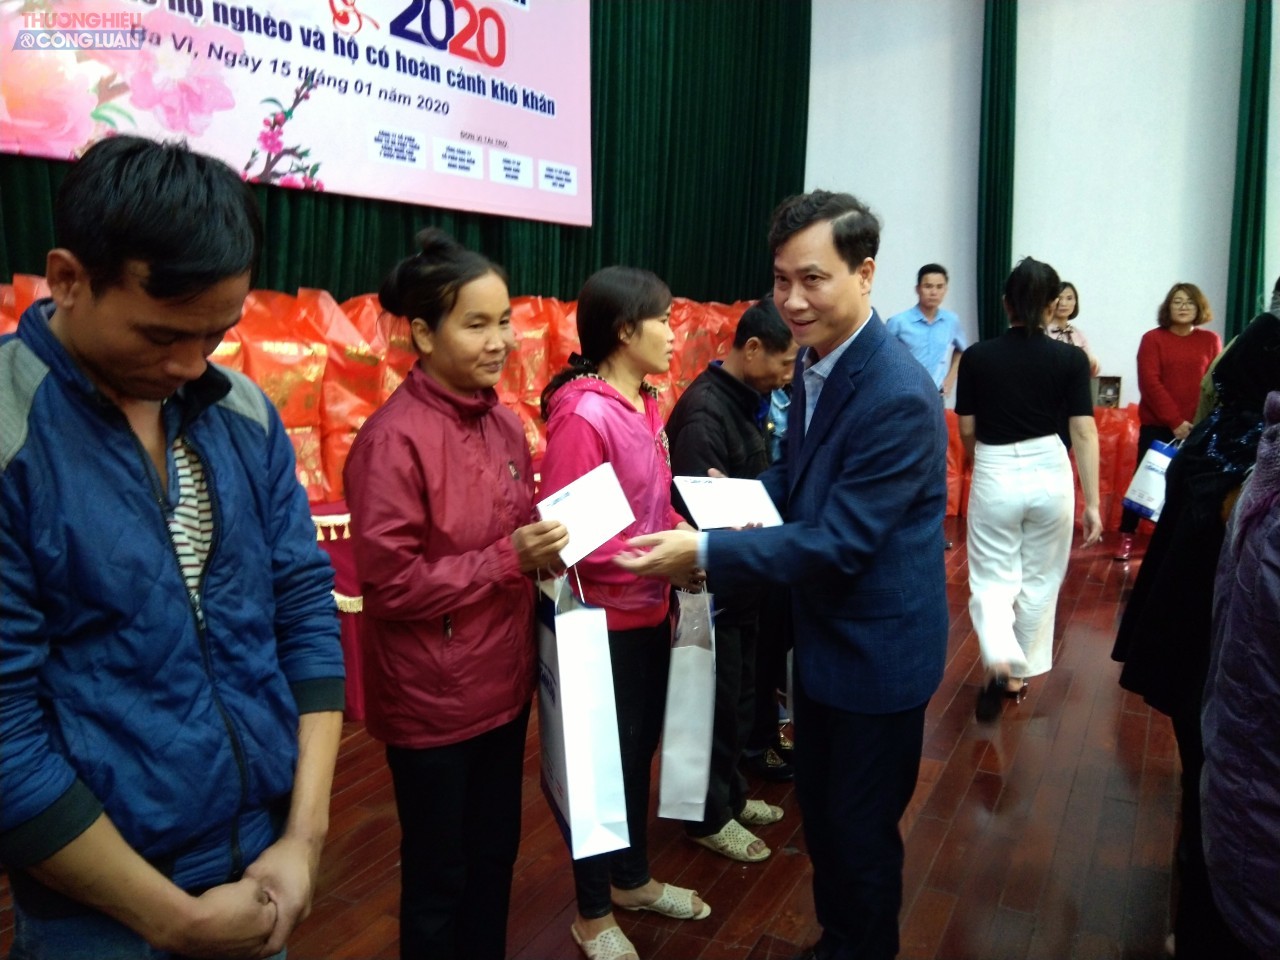 Phó Tổng Giám đốc Lê Mạnh Cường tặng quà các gia đình chính sách có hoàn cảnh khó khăn trên địa bàn Thị trấn Tây Đằng, huyện Ba Vì, Hà Nội